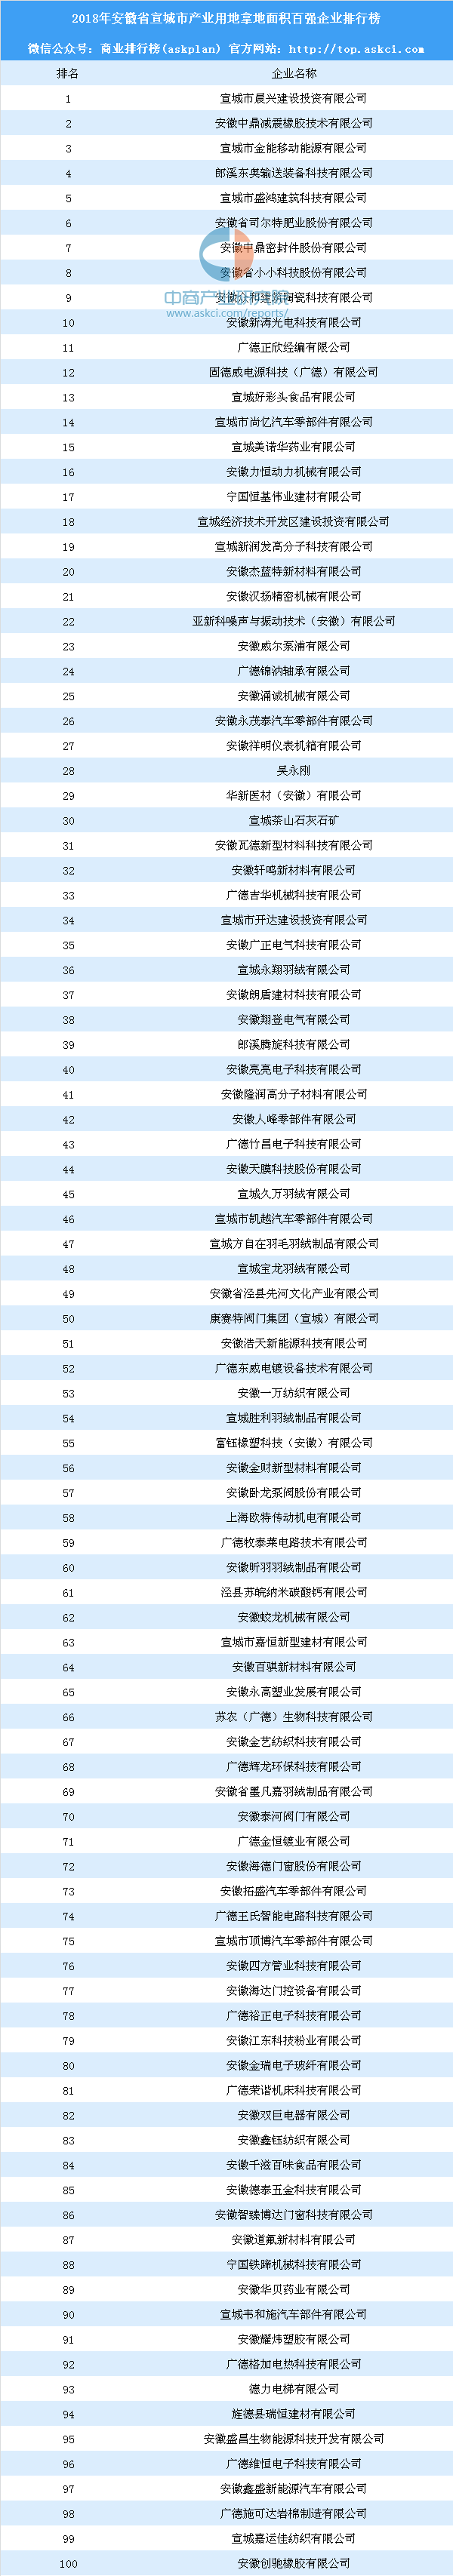 安徽面积排行_安徽省105个县级行政区面积排行榜,金寨县最大,蚌山区最小(2)